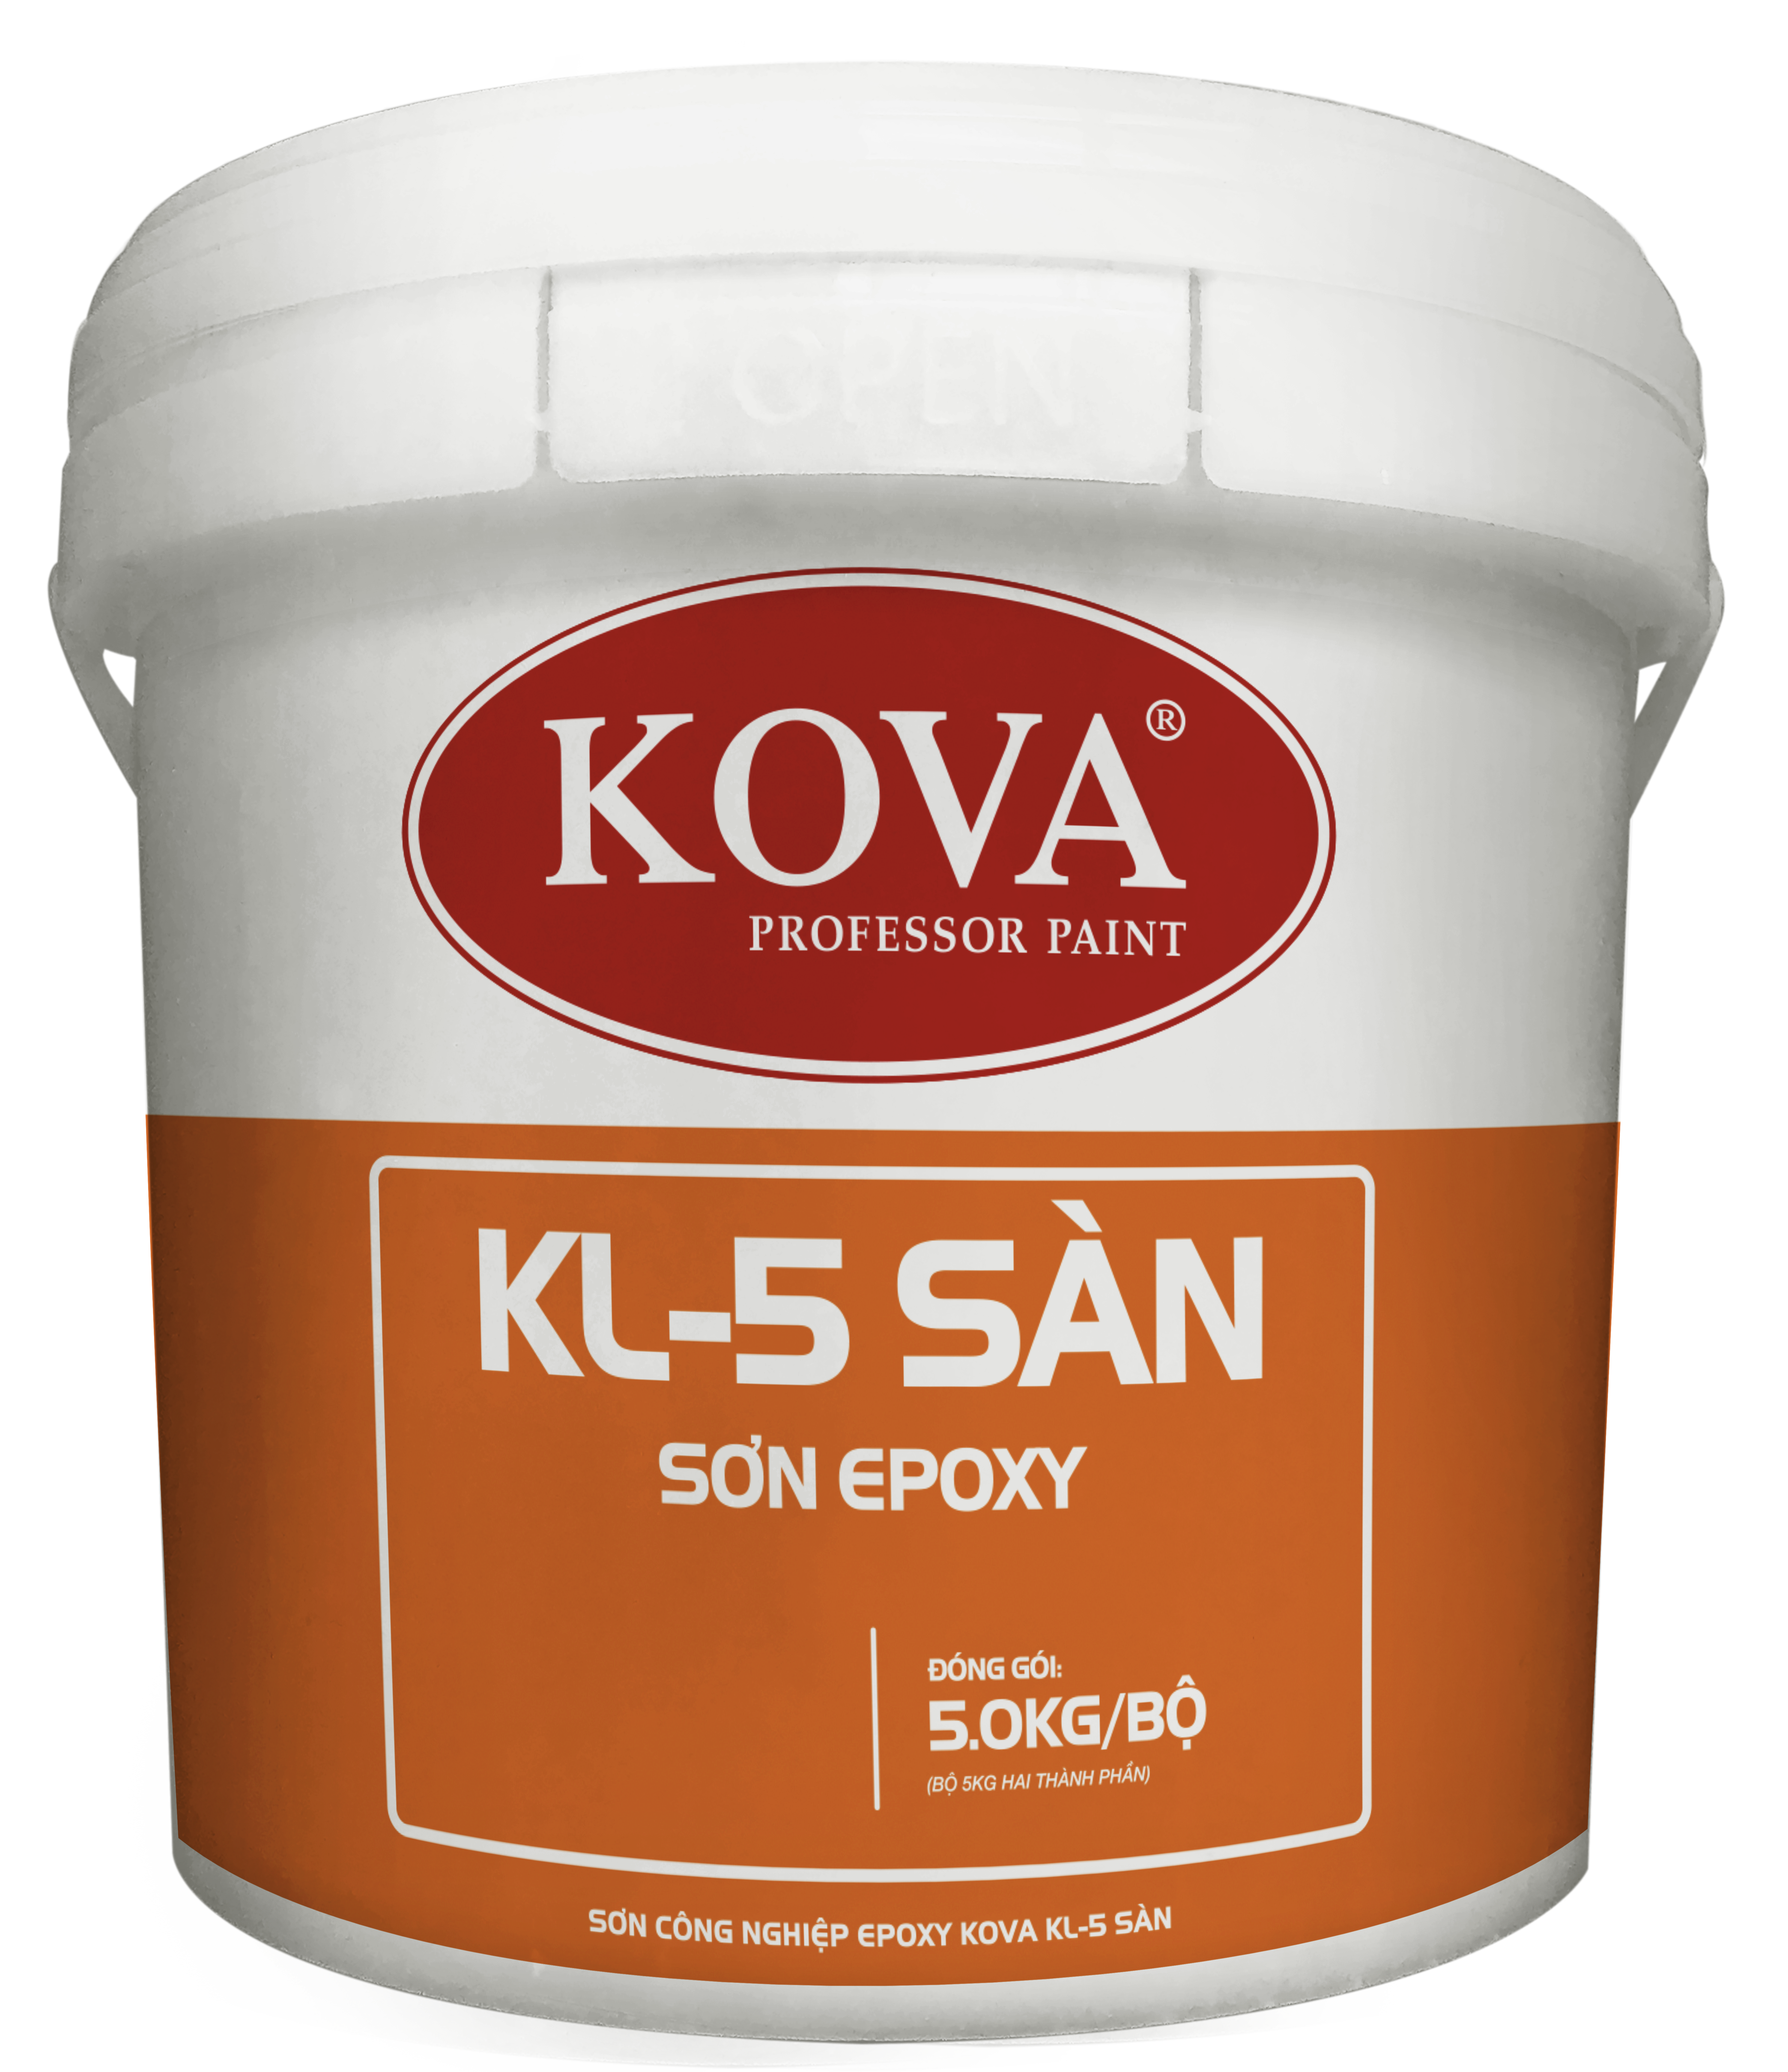 Sơn sàn epoxy Kova là gì và được sử dụng để làm gì?
